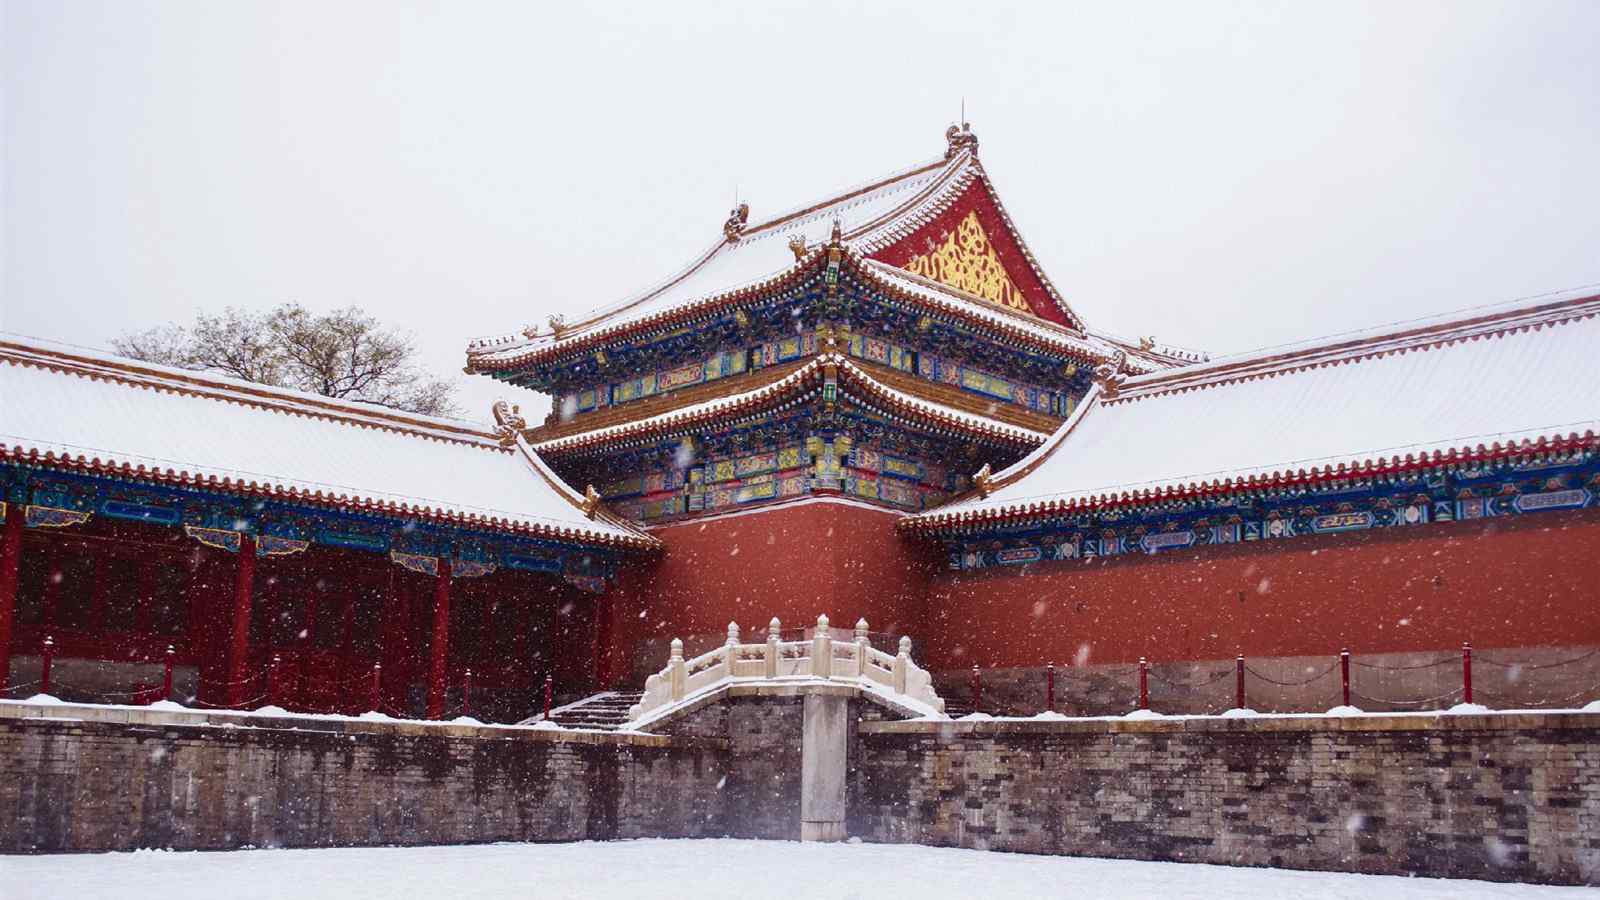 冬日故宫雪景唯美风景图片